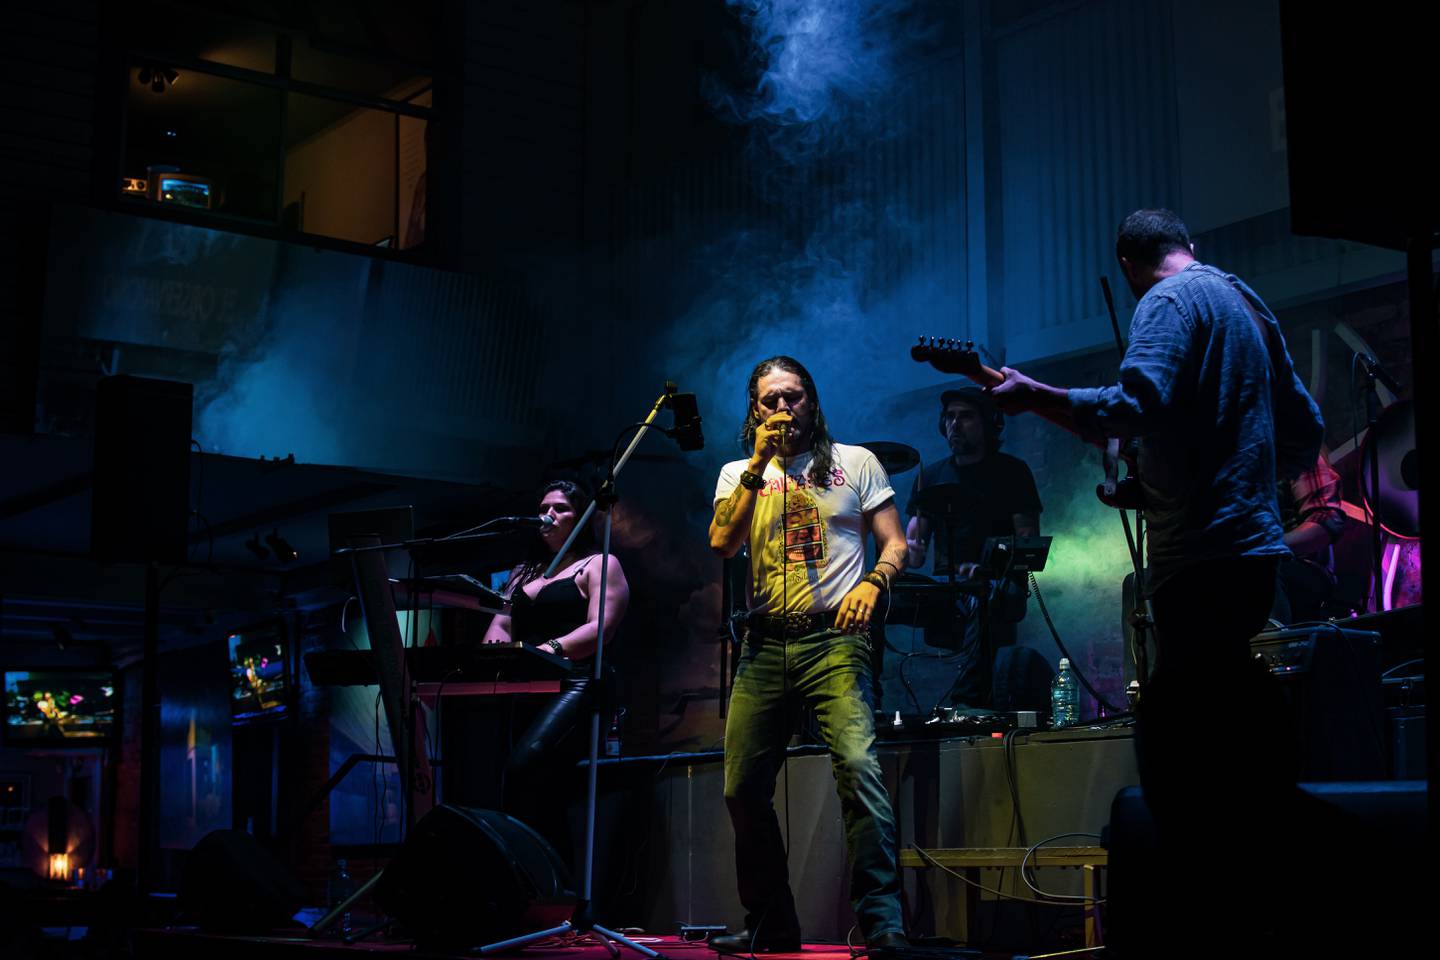 Bruno Hern, cantante de la banda tica El Nervio, ha compartido escenario con César López, exguitarrista de Caifanes, Jaguares y Maná